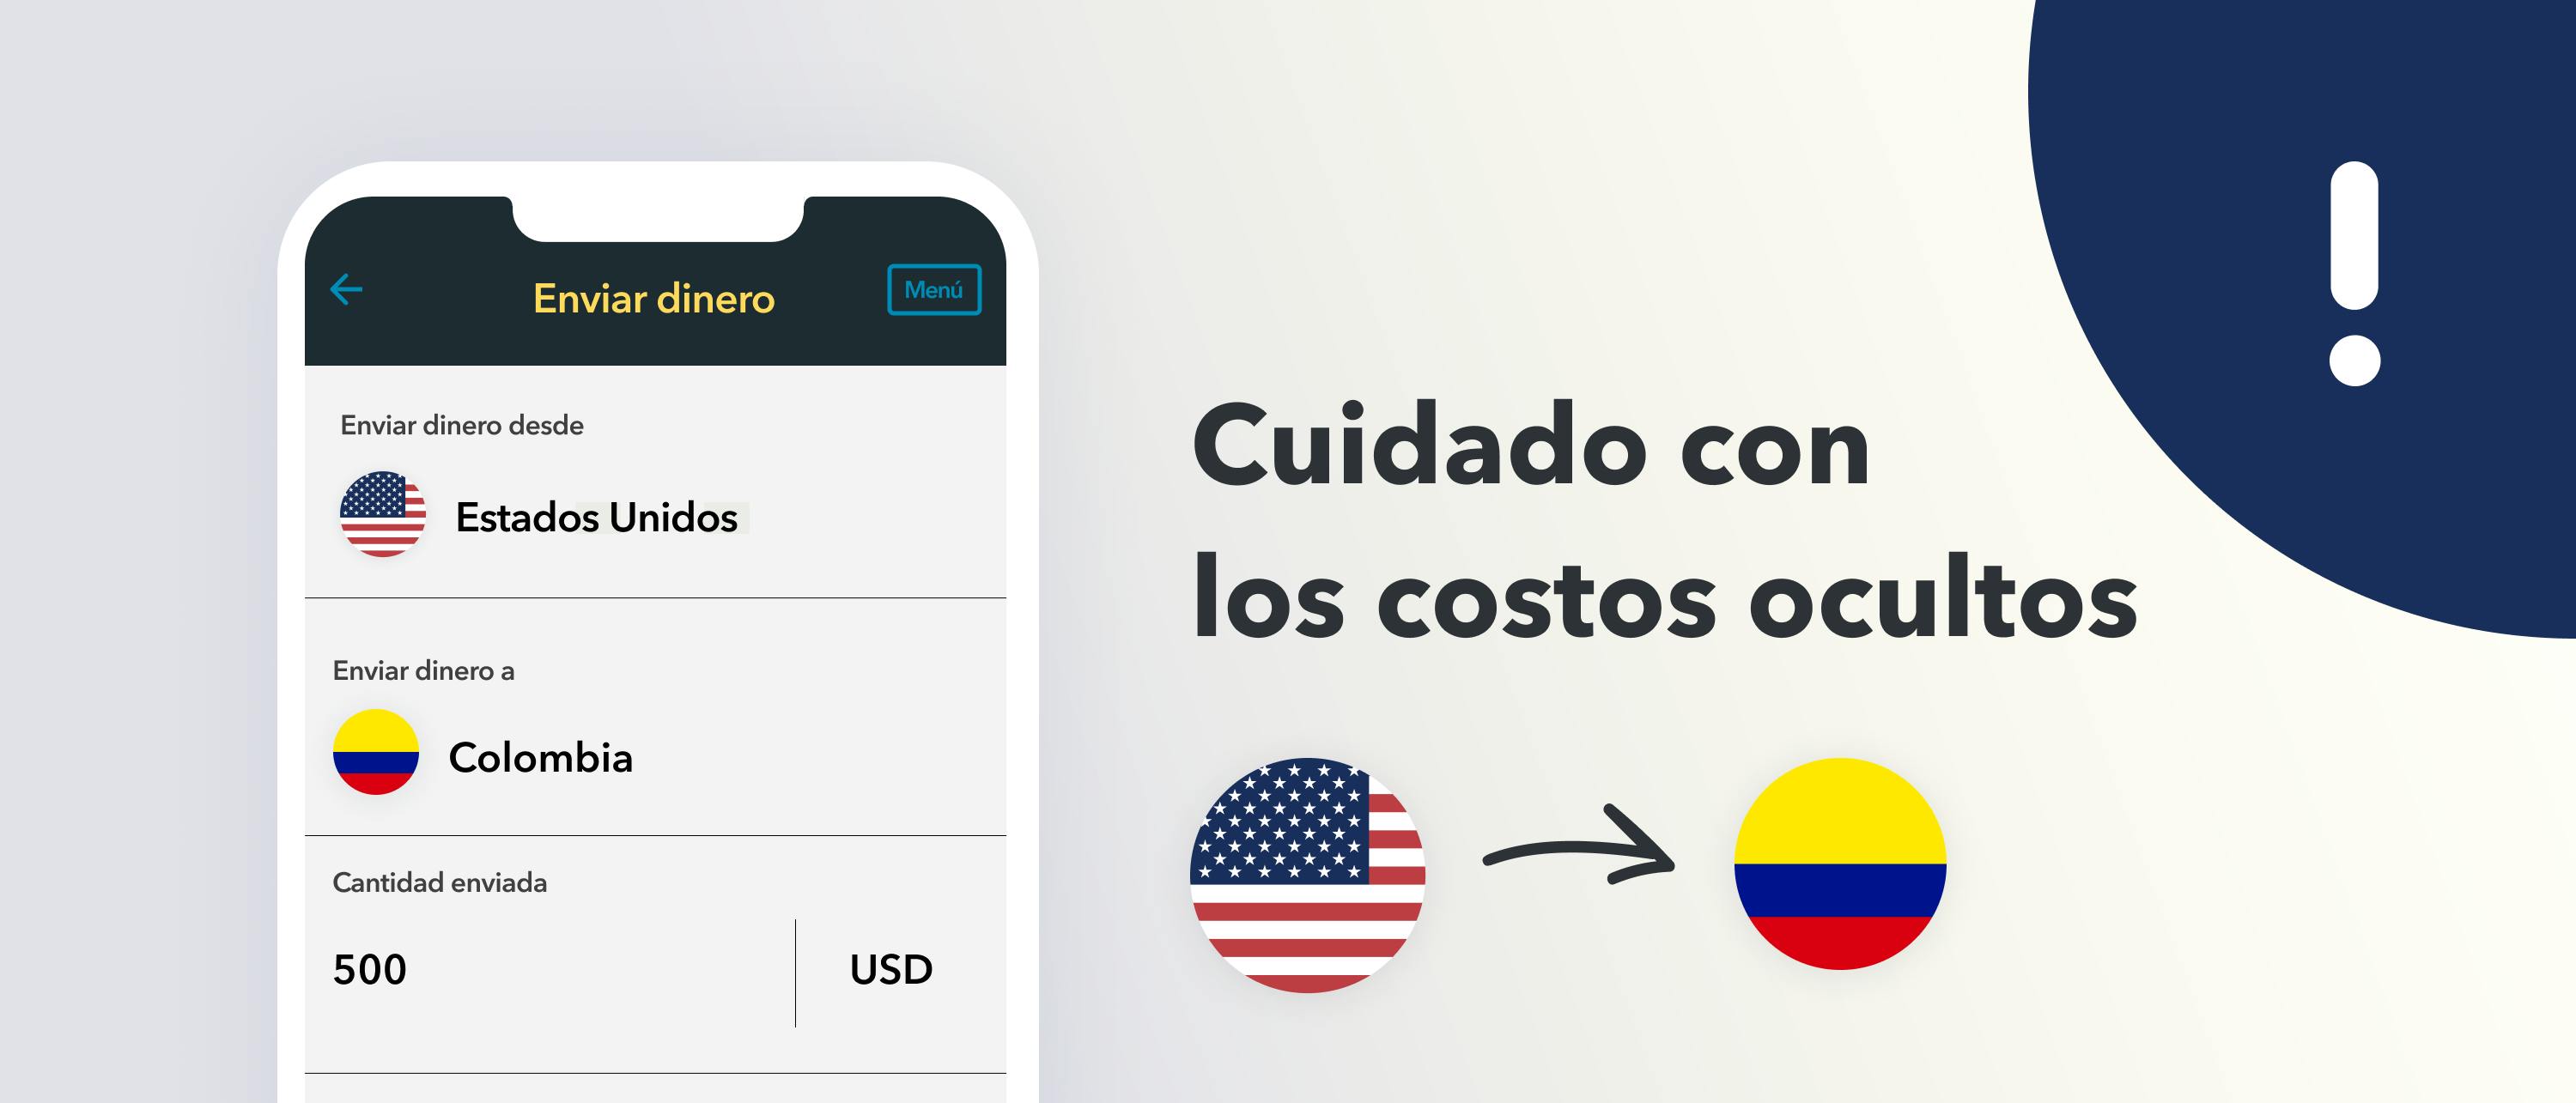 6 Mejores Formas De Enviar Dinero A Colombia Desde Usa 7156